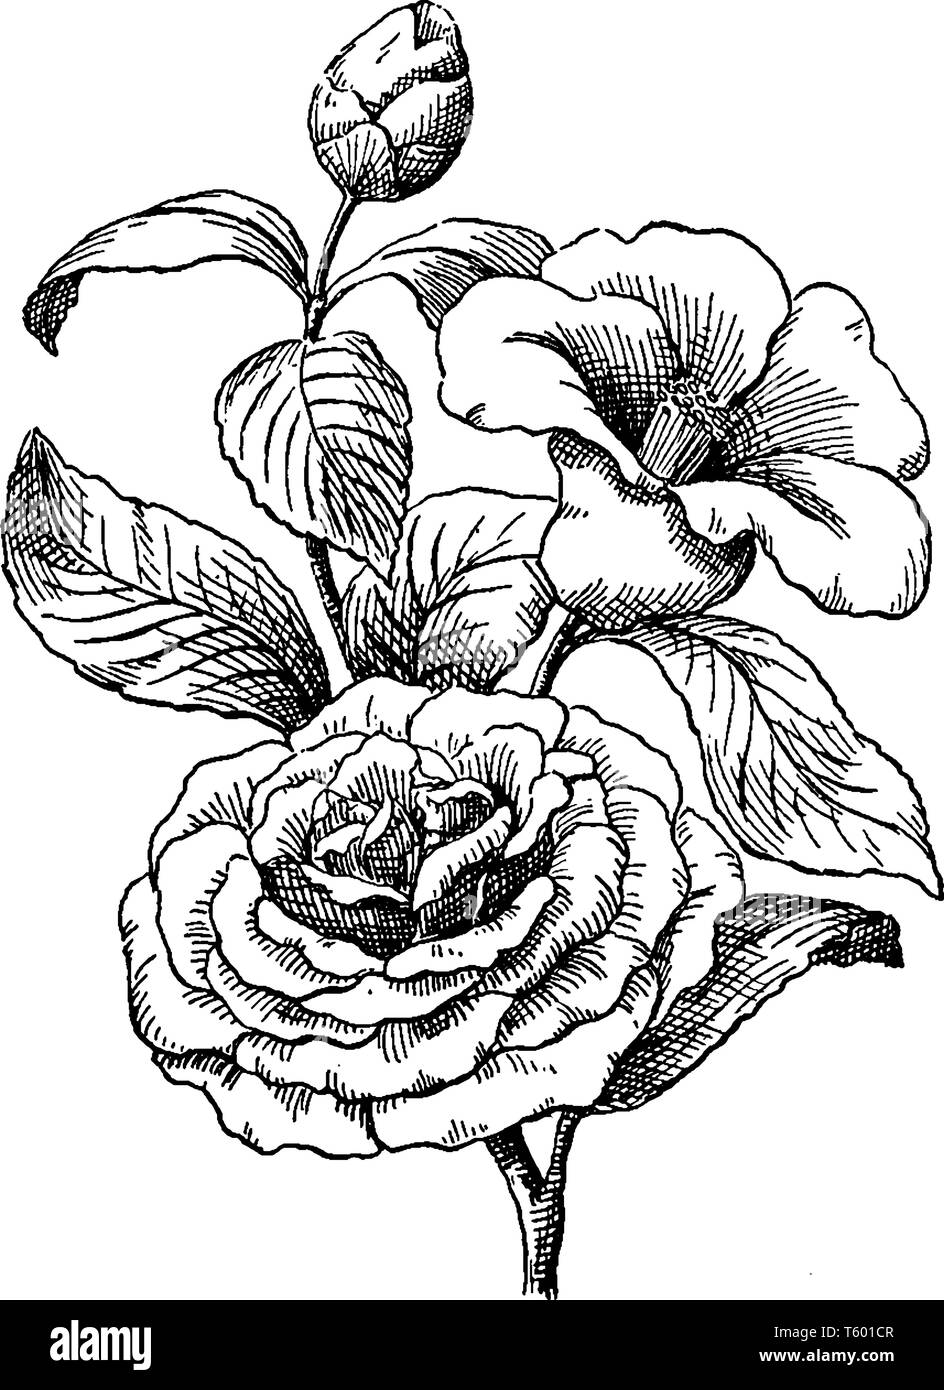 Camellia ist eine blühende Pflanze. Es ist eine immergrüne Pflanze in Rot, Rosa, Gelb, großen Blüten, vintage Strichzeichnung oder Gravur Abbildung. Stock Vektor